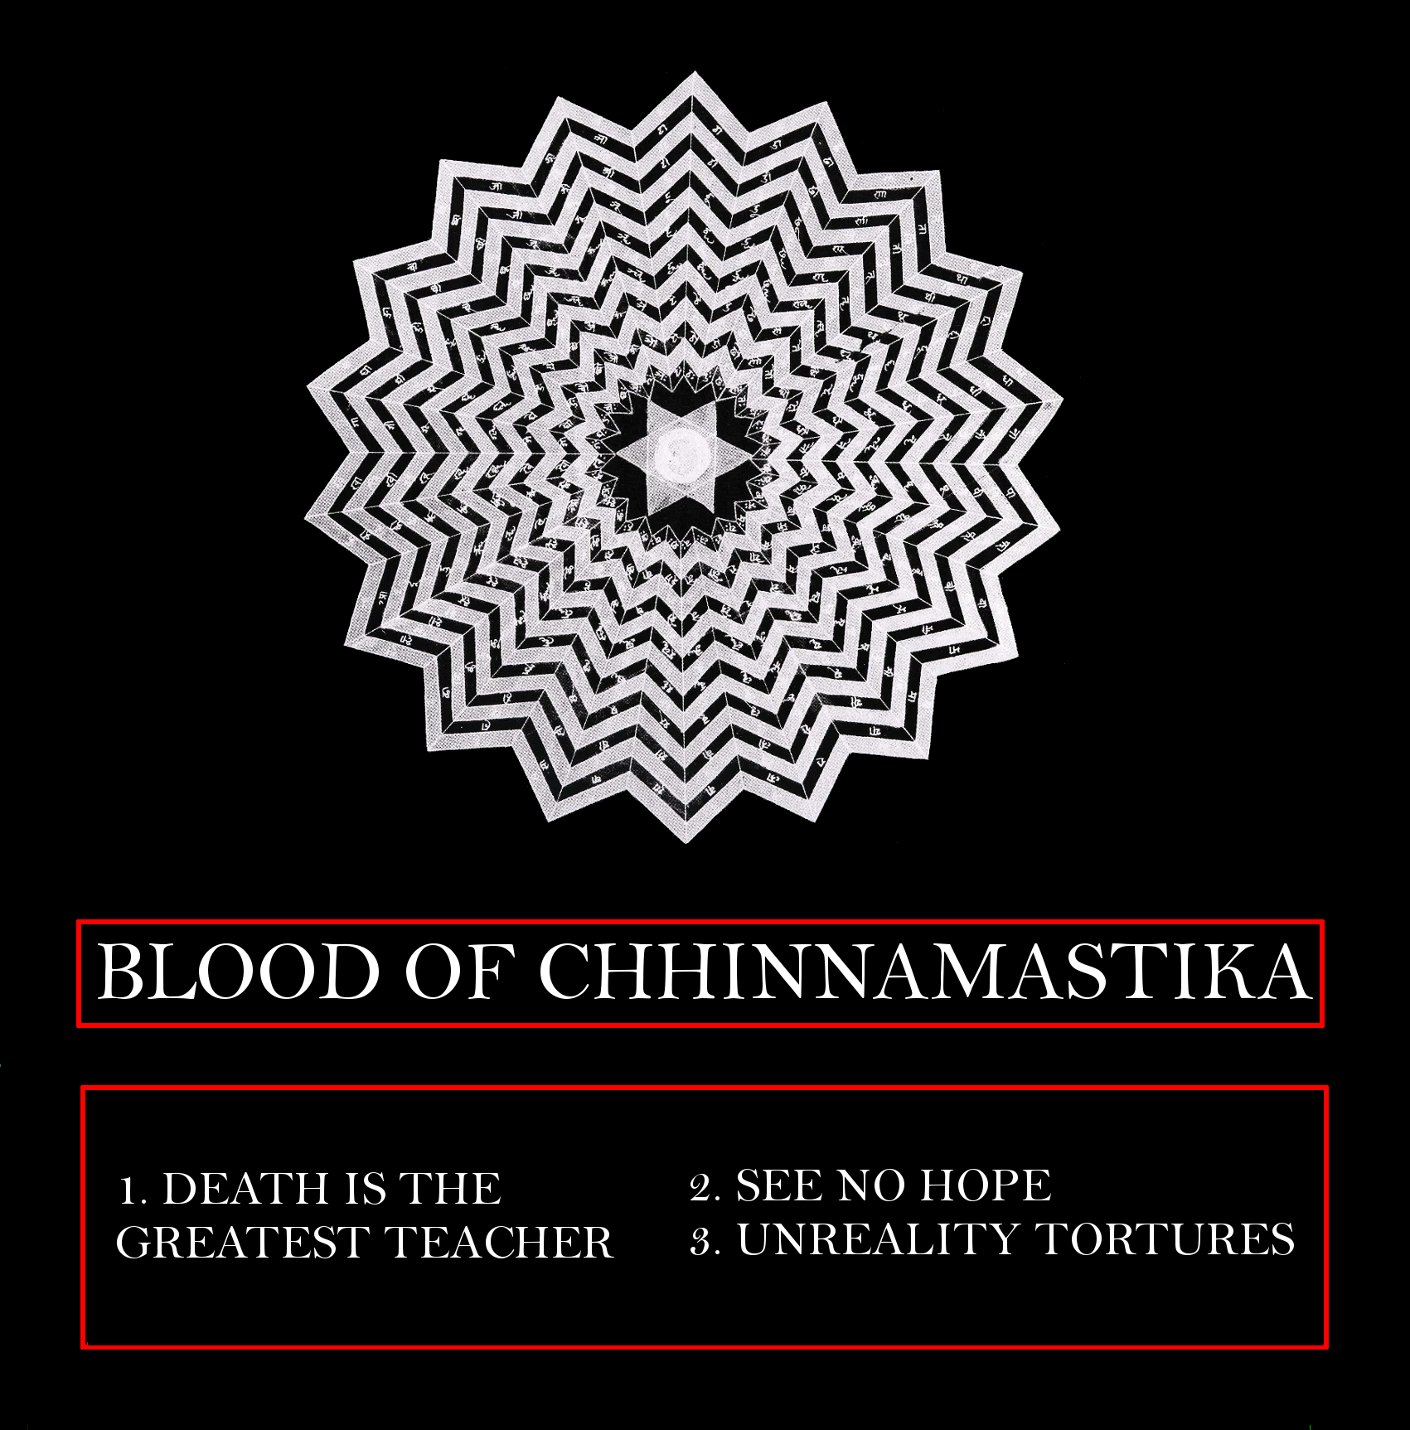 BLOOD OF CHHINNAMASTIKA